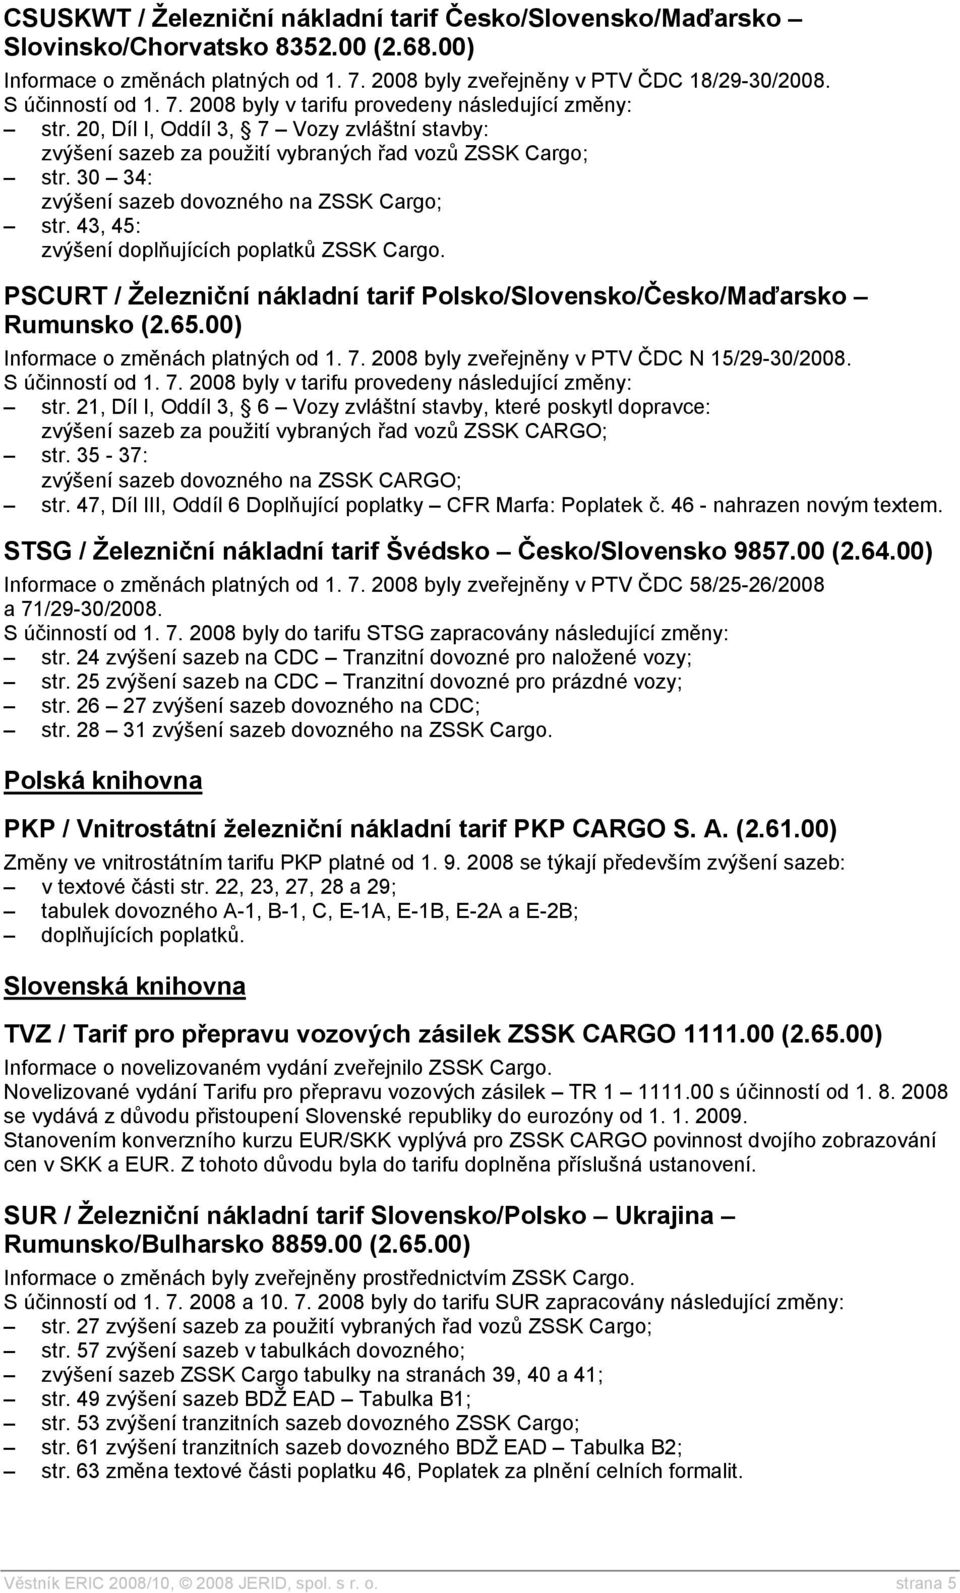 43, 45: zvýšení doplňujících poplatků ZSSK Cargo. PSCURT / Železniční nákladní tarif Polsko/Slovensko/Česko/Maďarsko Rumunsko (2.65.00) Informace o změnách platných od 1. 7.